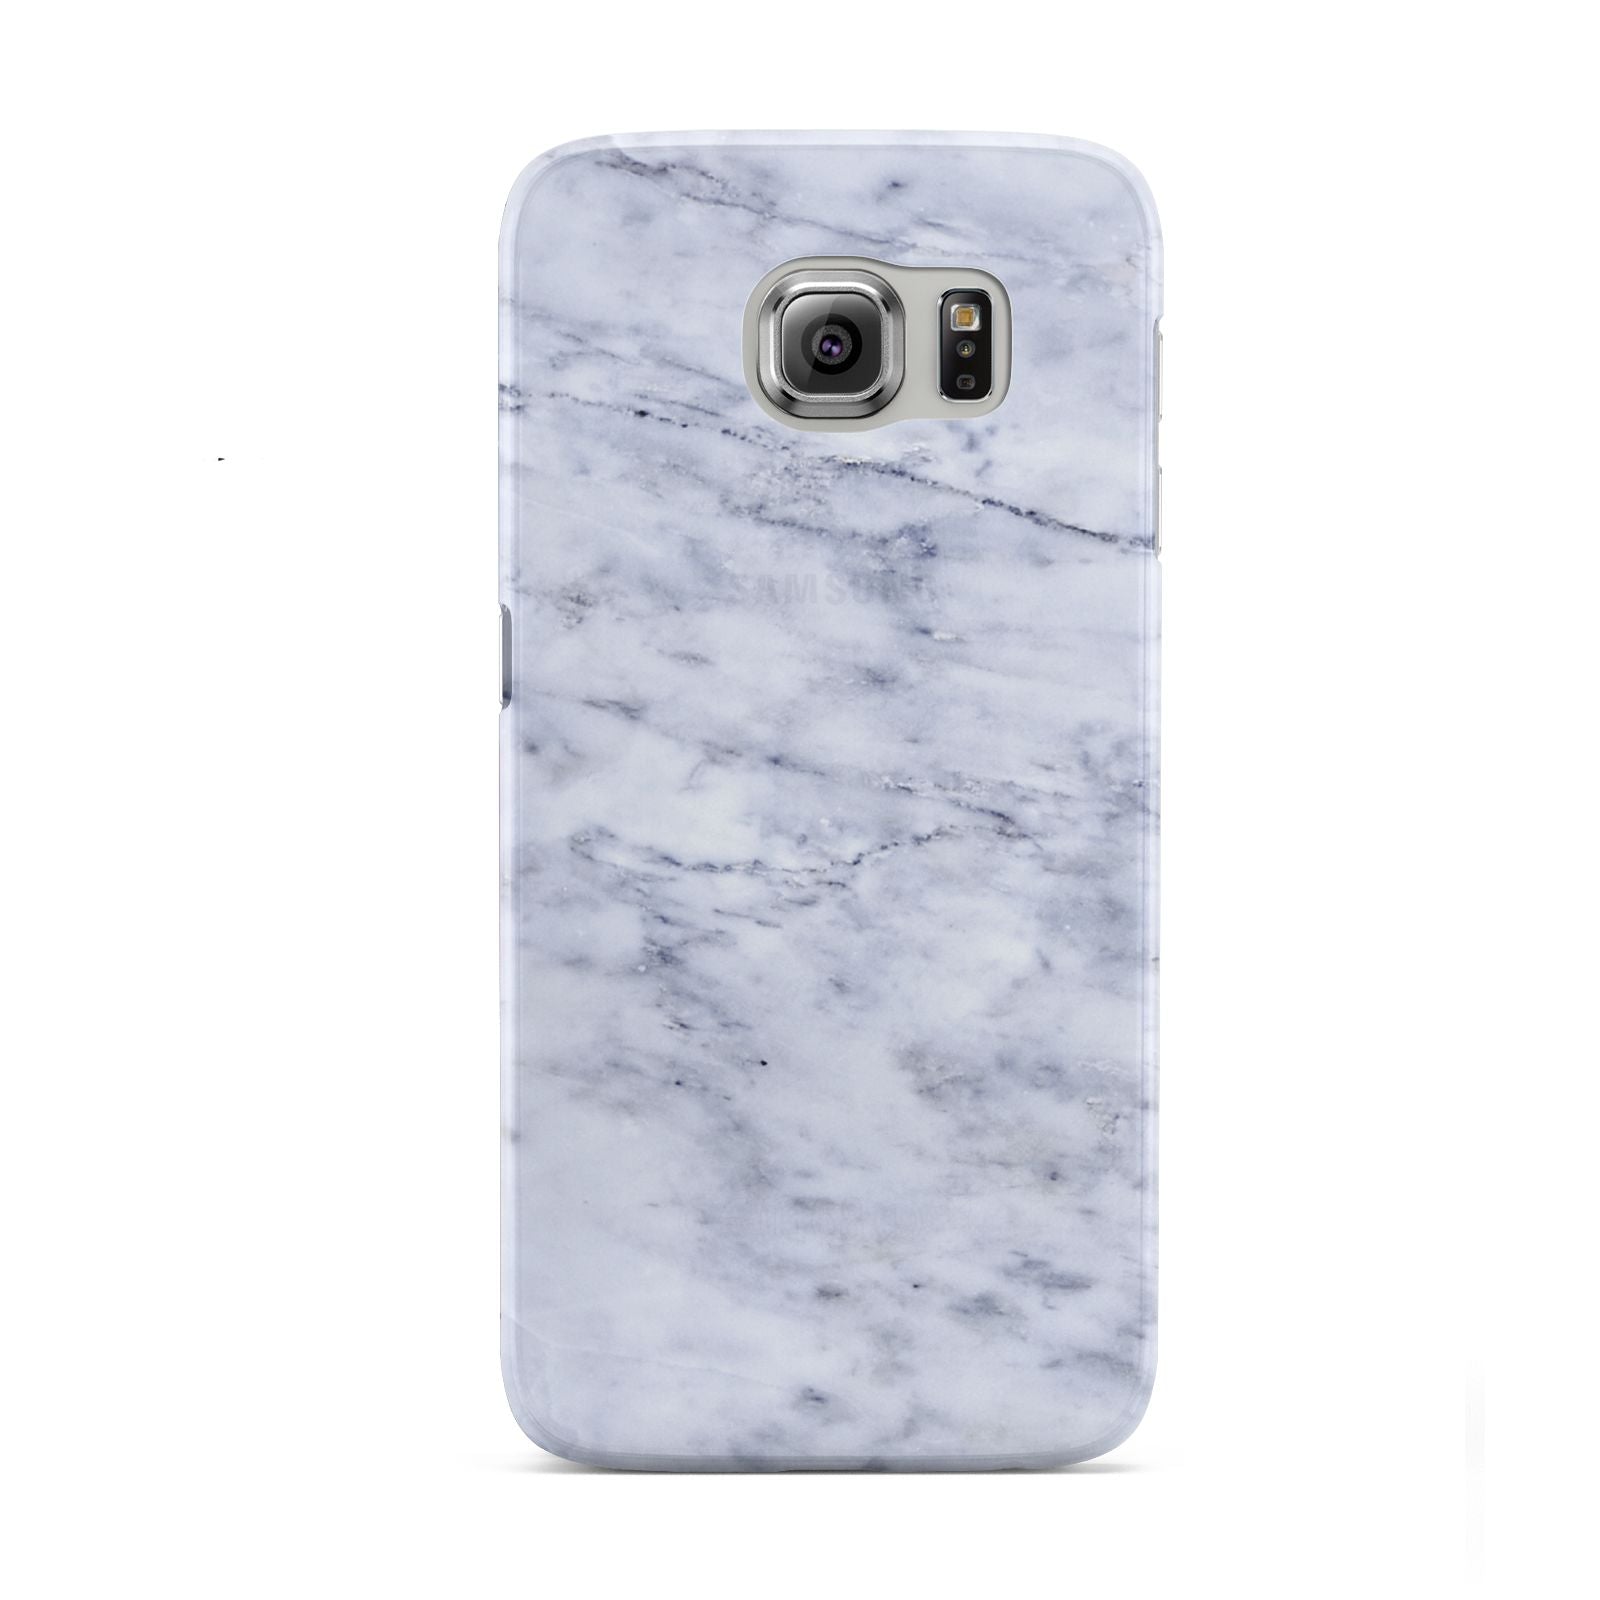 Faux Carrara Marble Print Samsung Galaxy S6 Case